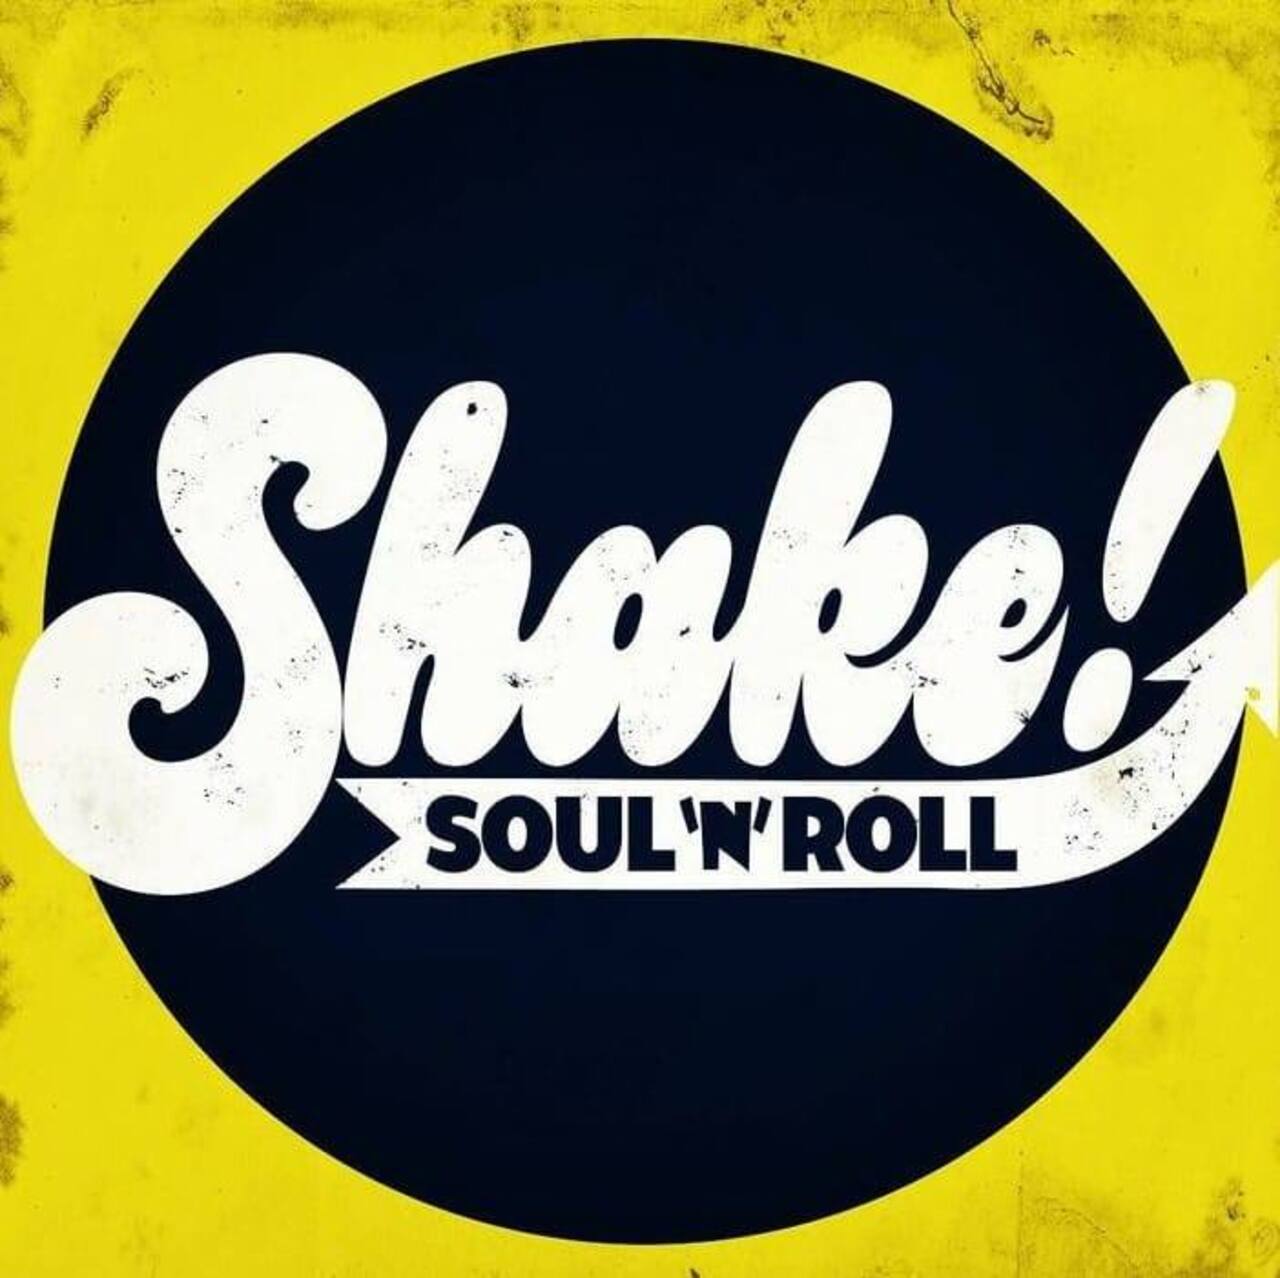 Shake!, explosivo soul y rhythm and blues